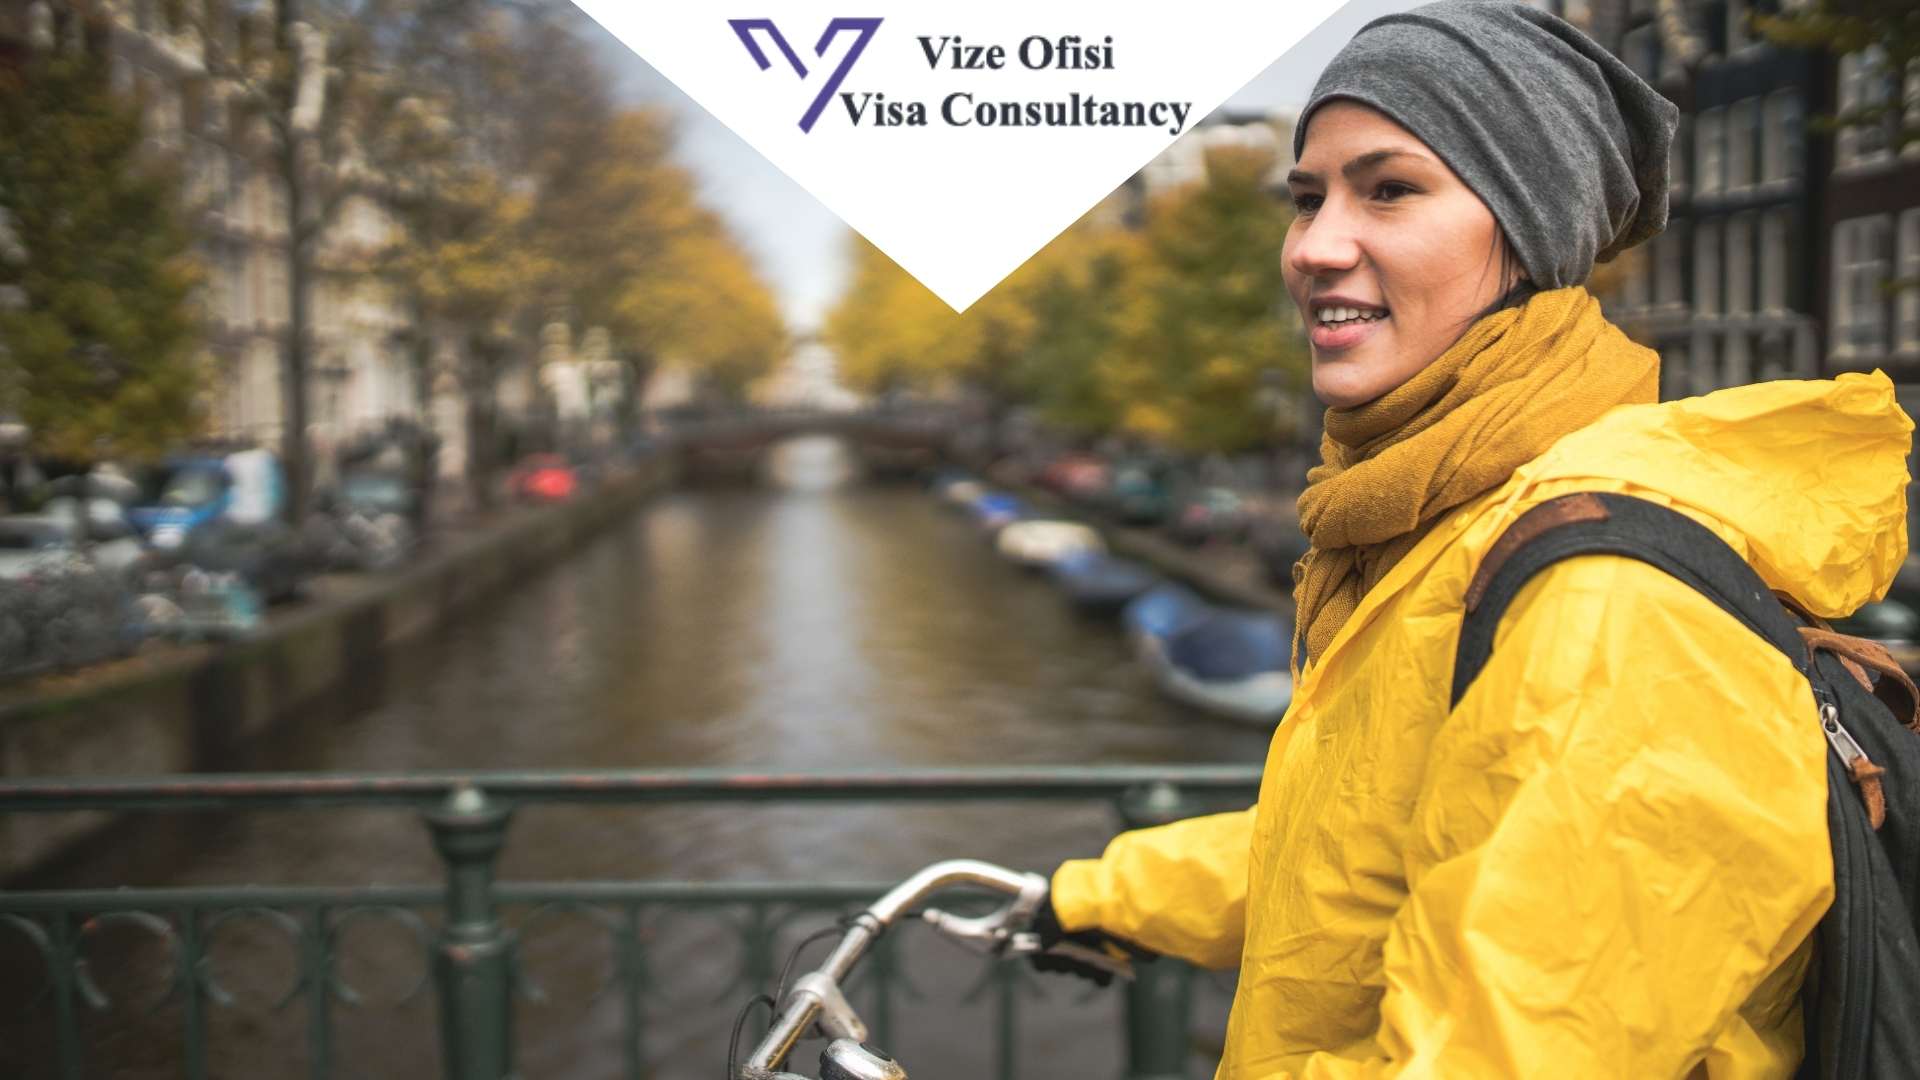 Hollanda Aile ve Arkadaş Ziyaret Vizesi Evrakları 2021